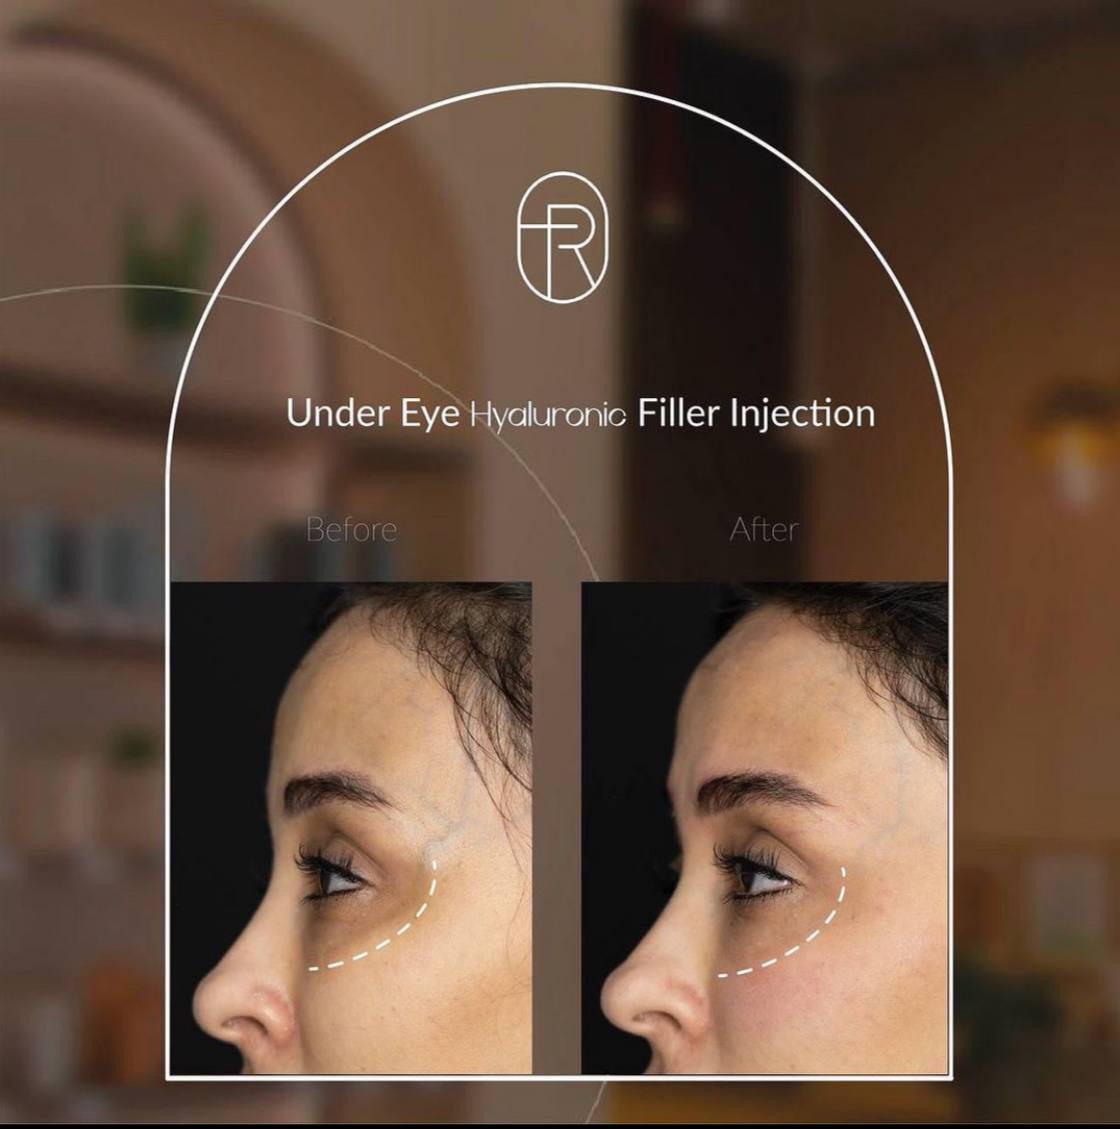 Before After - under eye Hyaluronic Filler